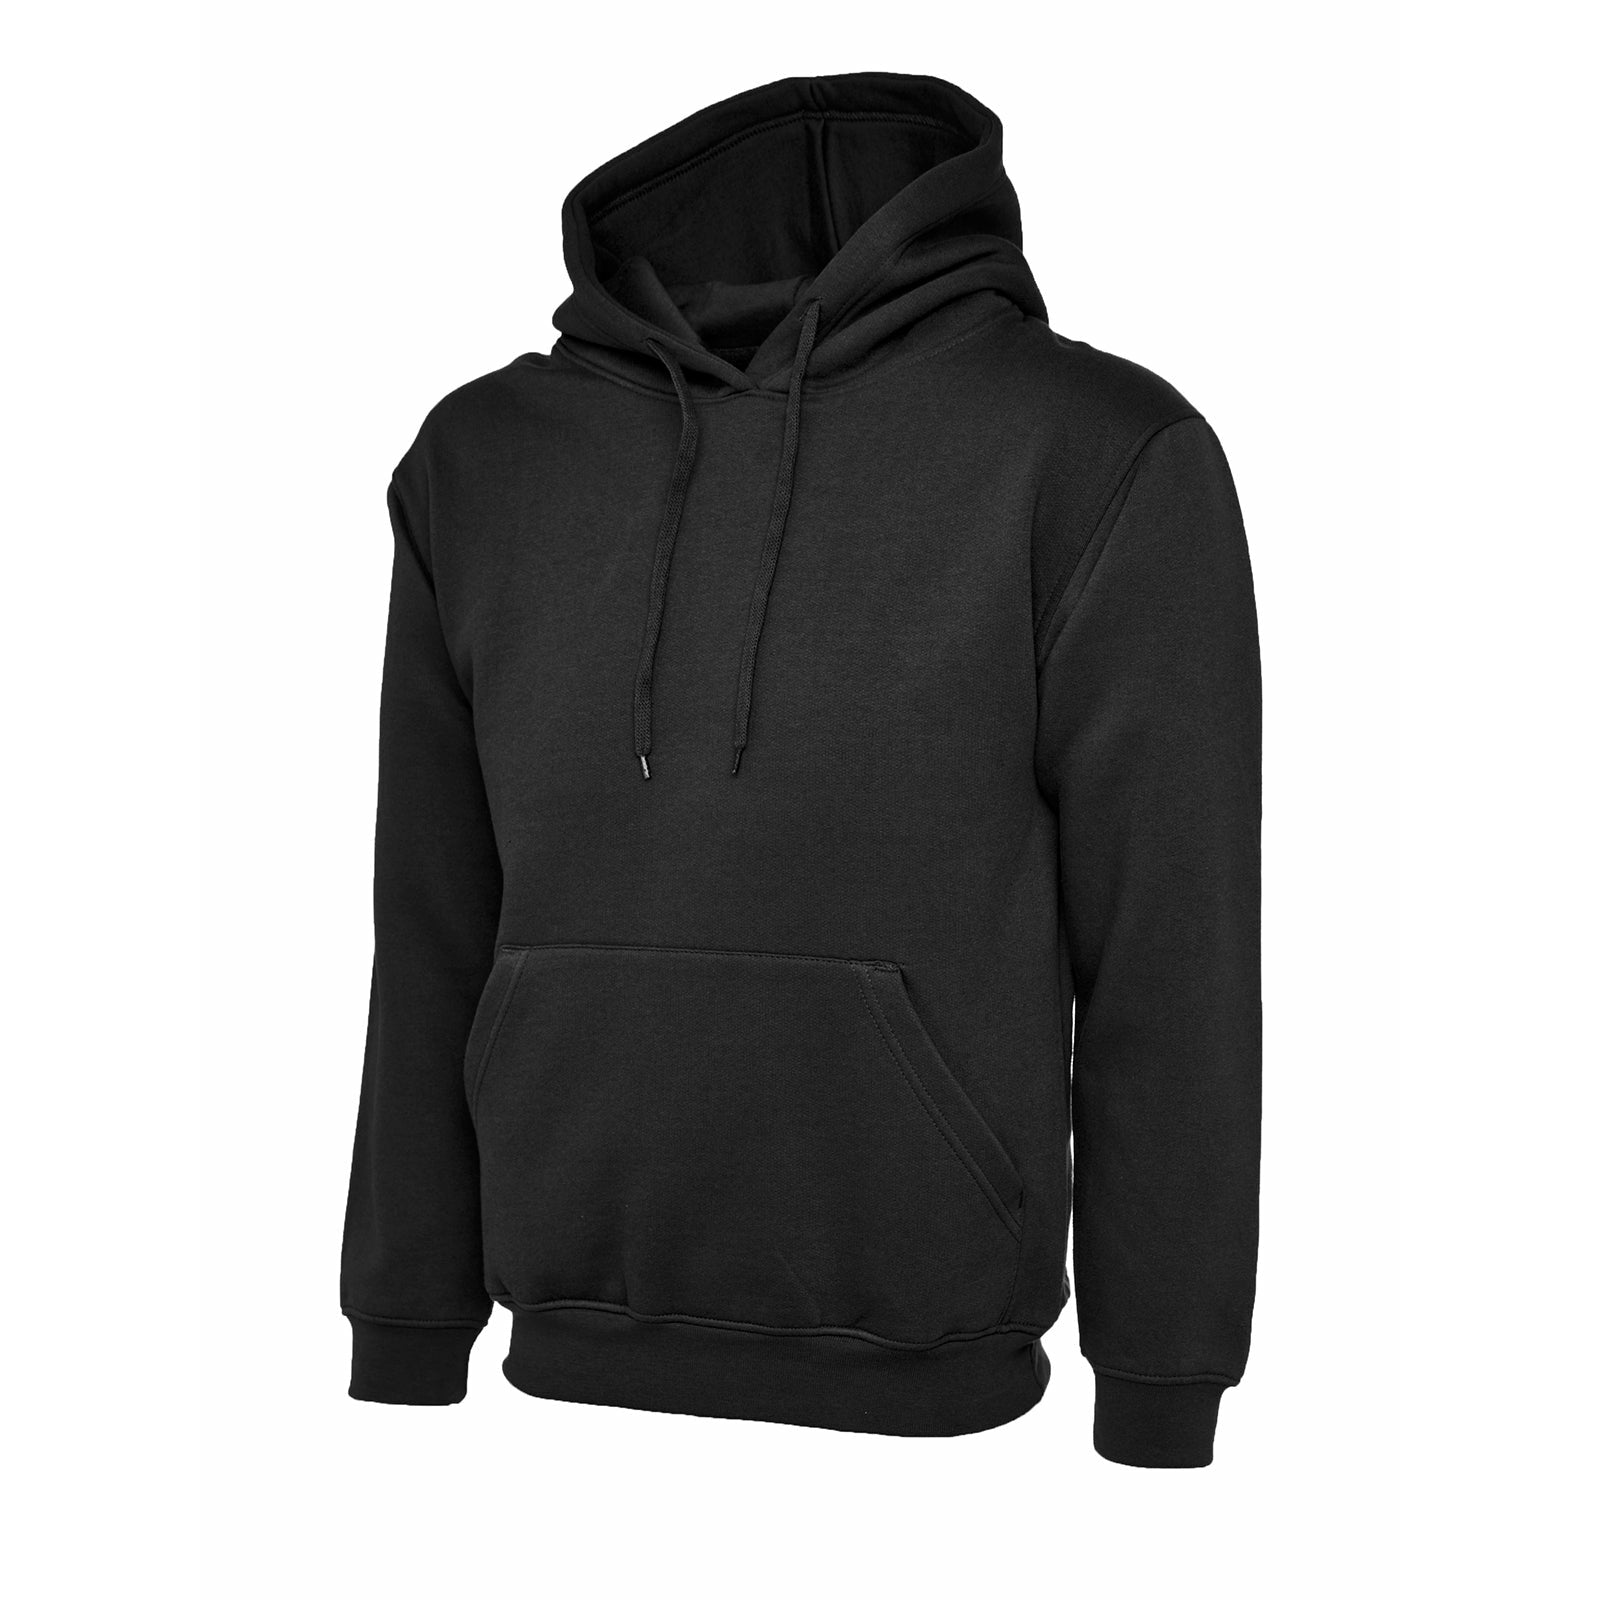 Ladies Deluxe Hooded Sweatshirt Black